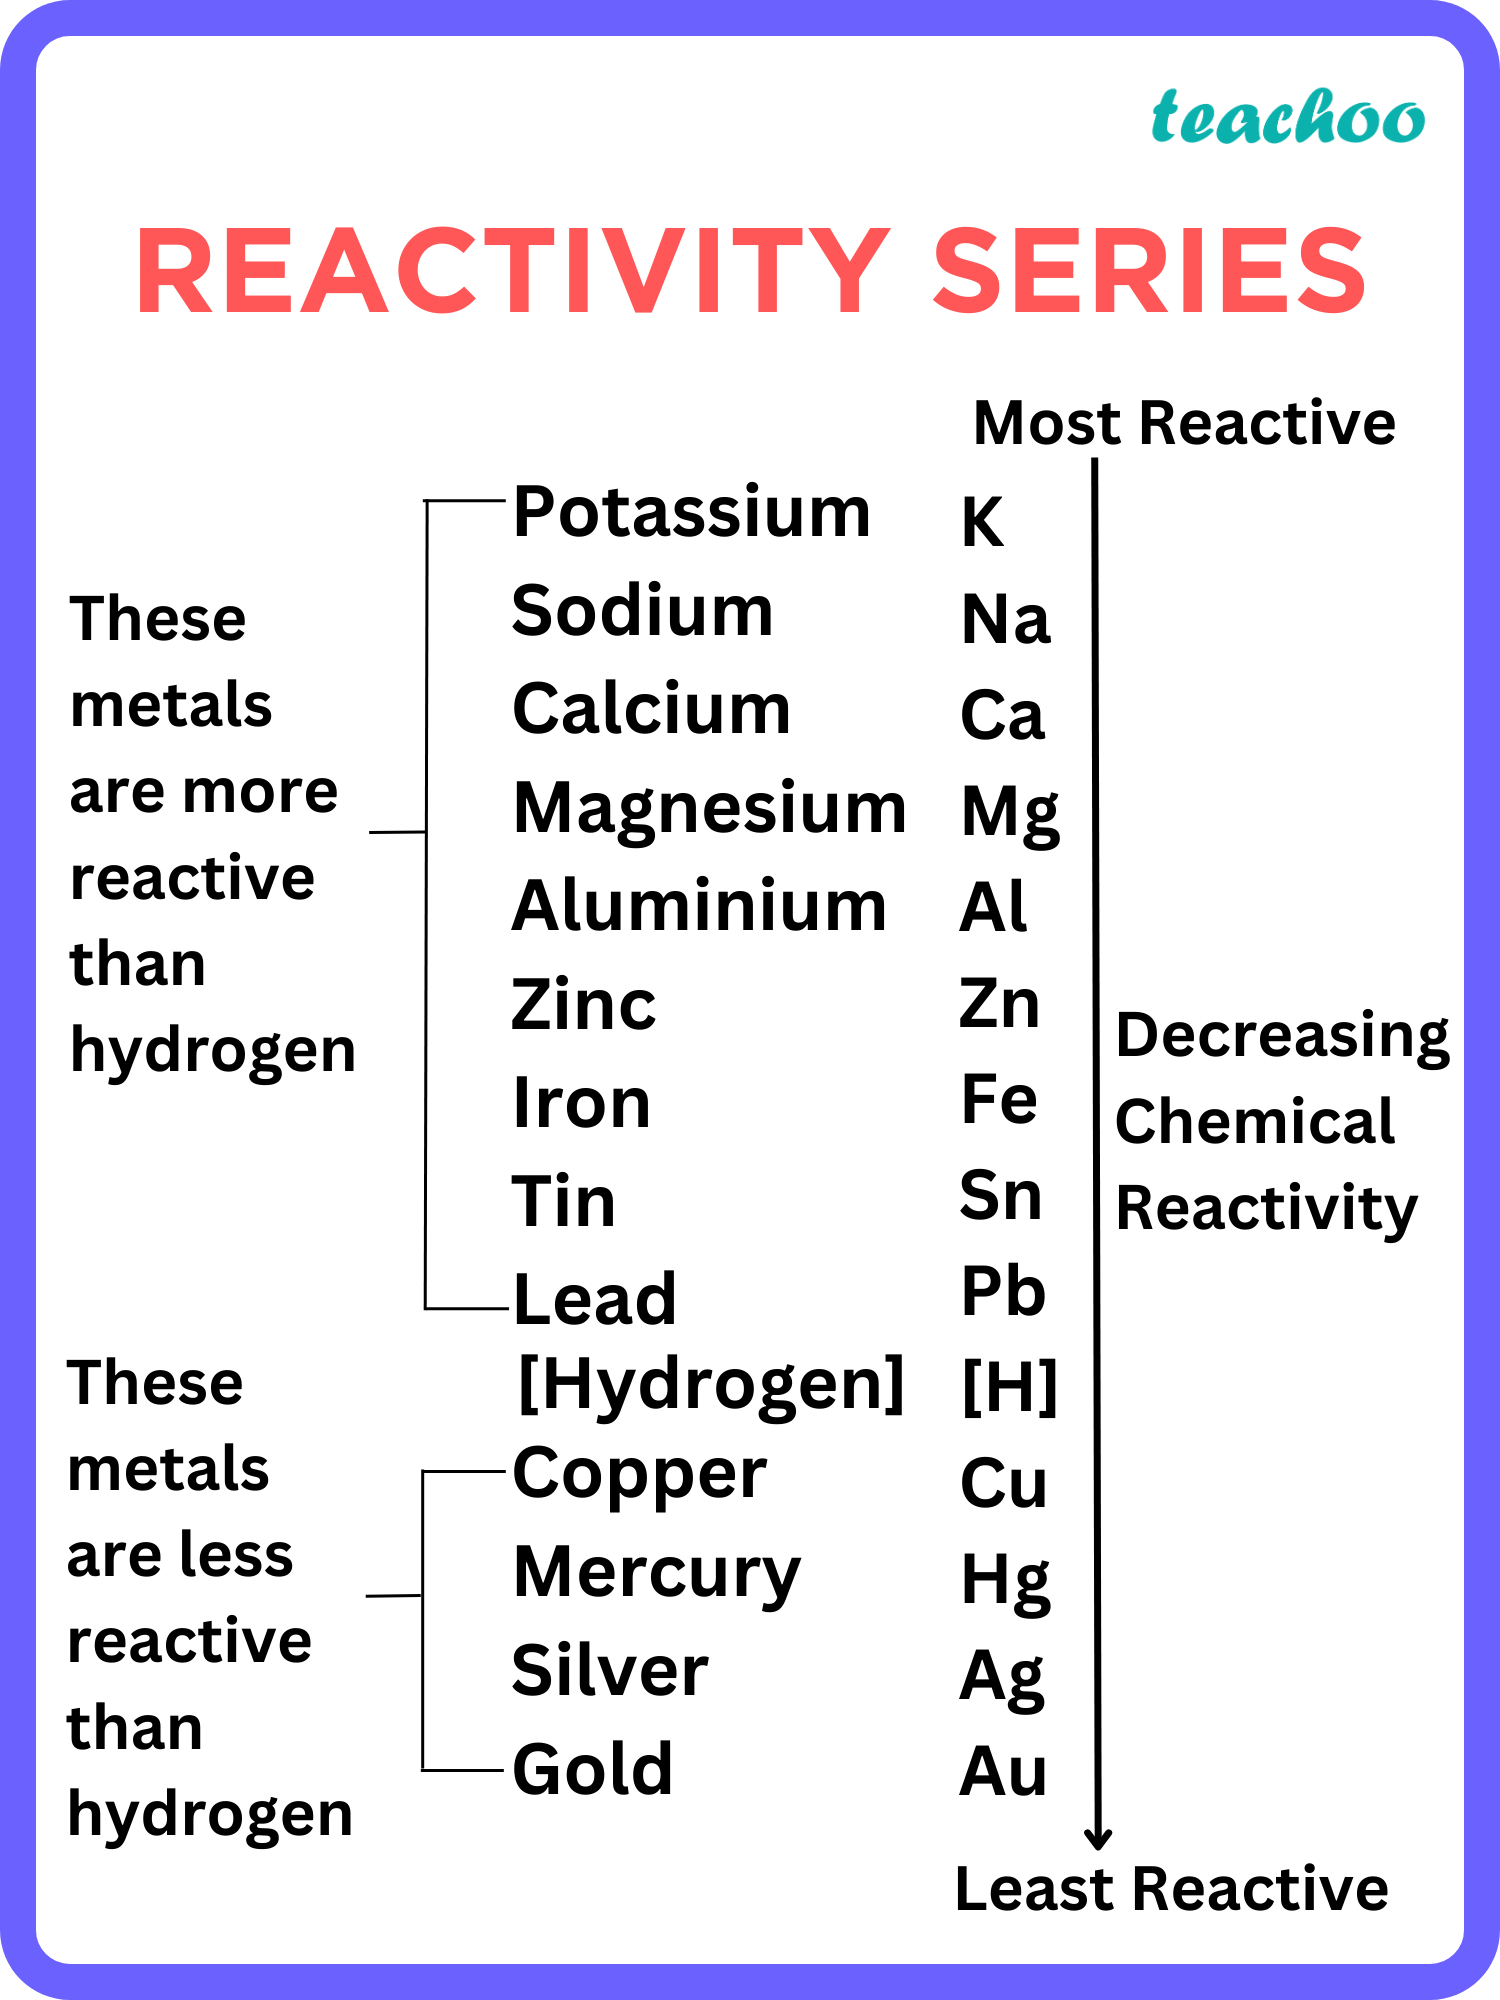 Reactivity Series - Teachoo.png